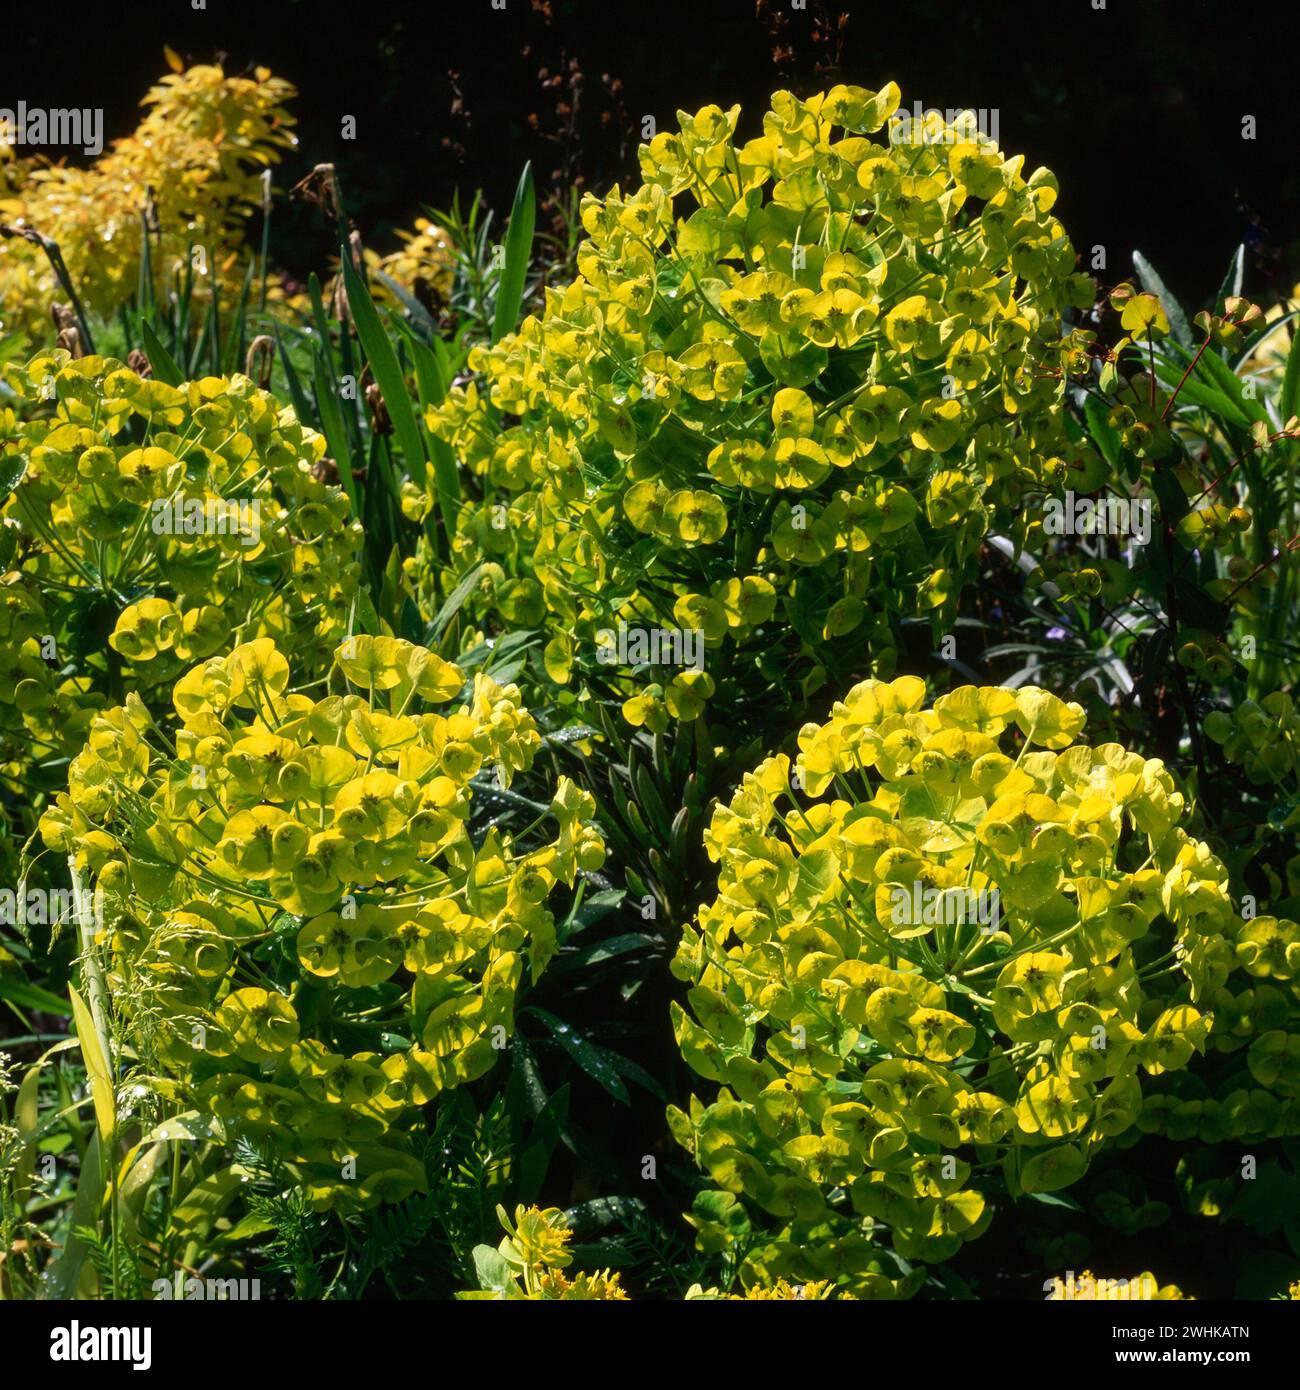 Euphorbia characias subsp. Wulfenii "Joyce's Giant" spurga piante con grandi teste verdi luminose al confine con il giardino, Inghilterra, Regno Unito Foto Stock